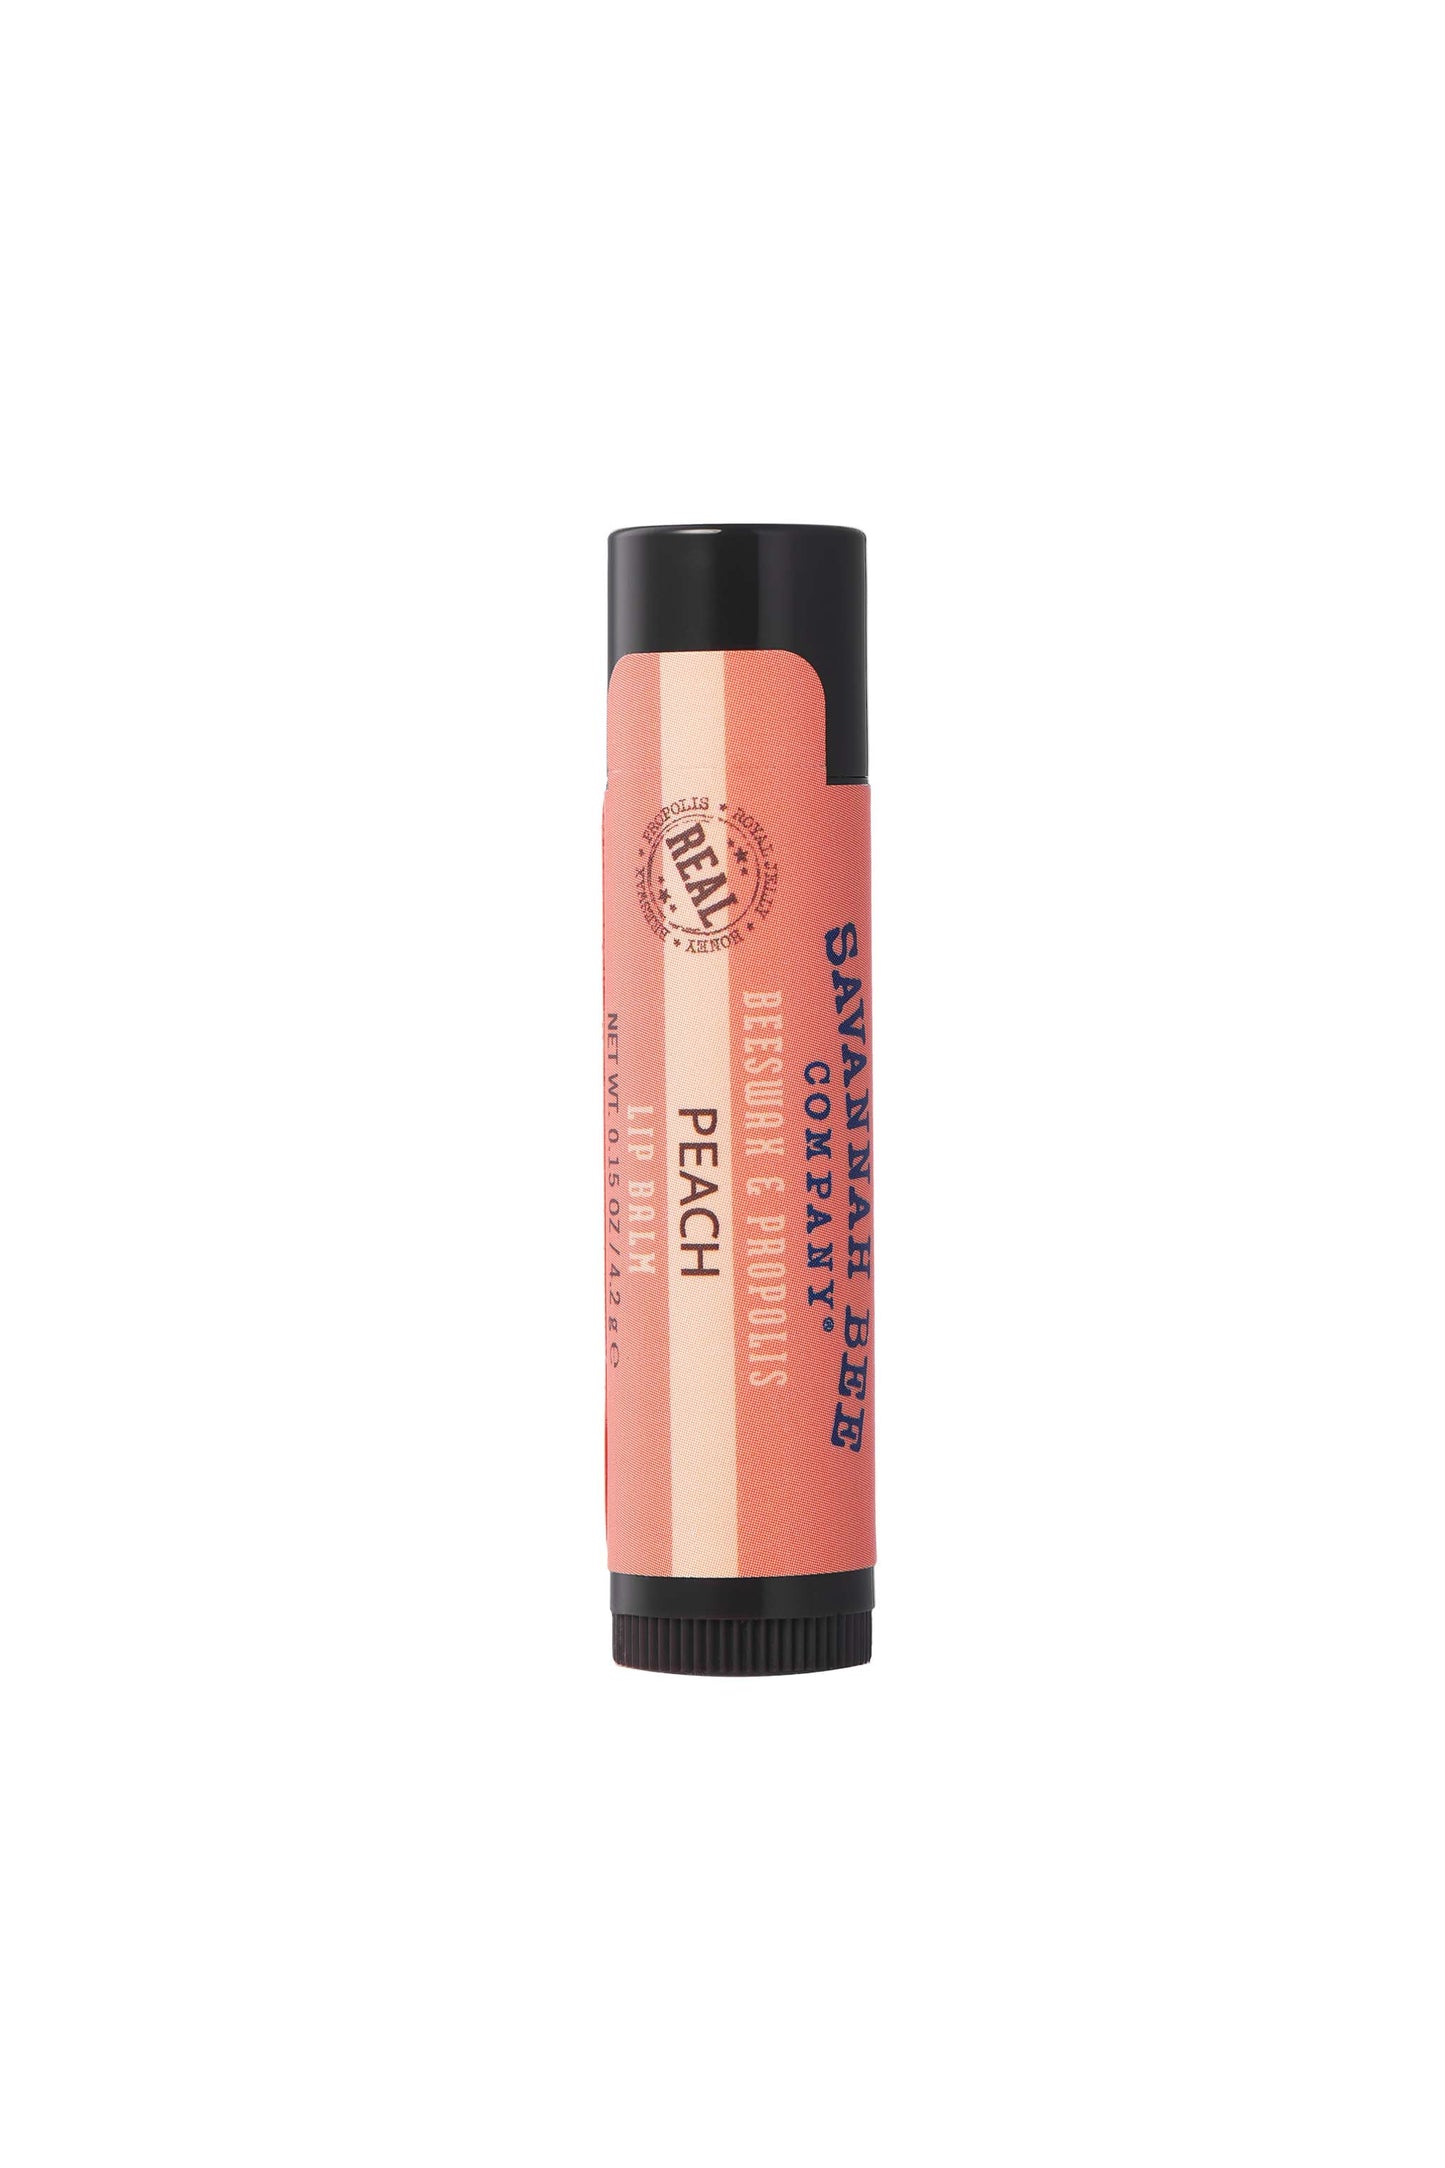 Savannah Bee Company Peach Beeswax & Propolis Lip Balm peach colored lipstick tube.